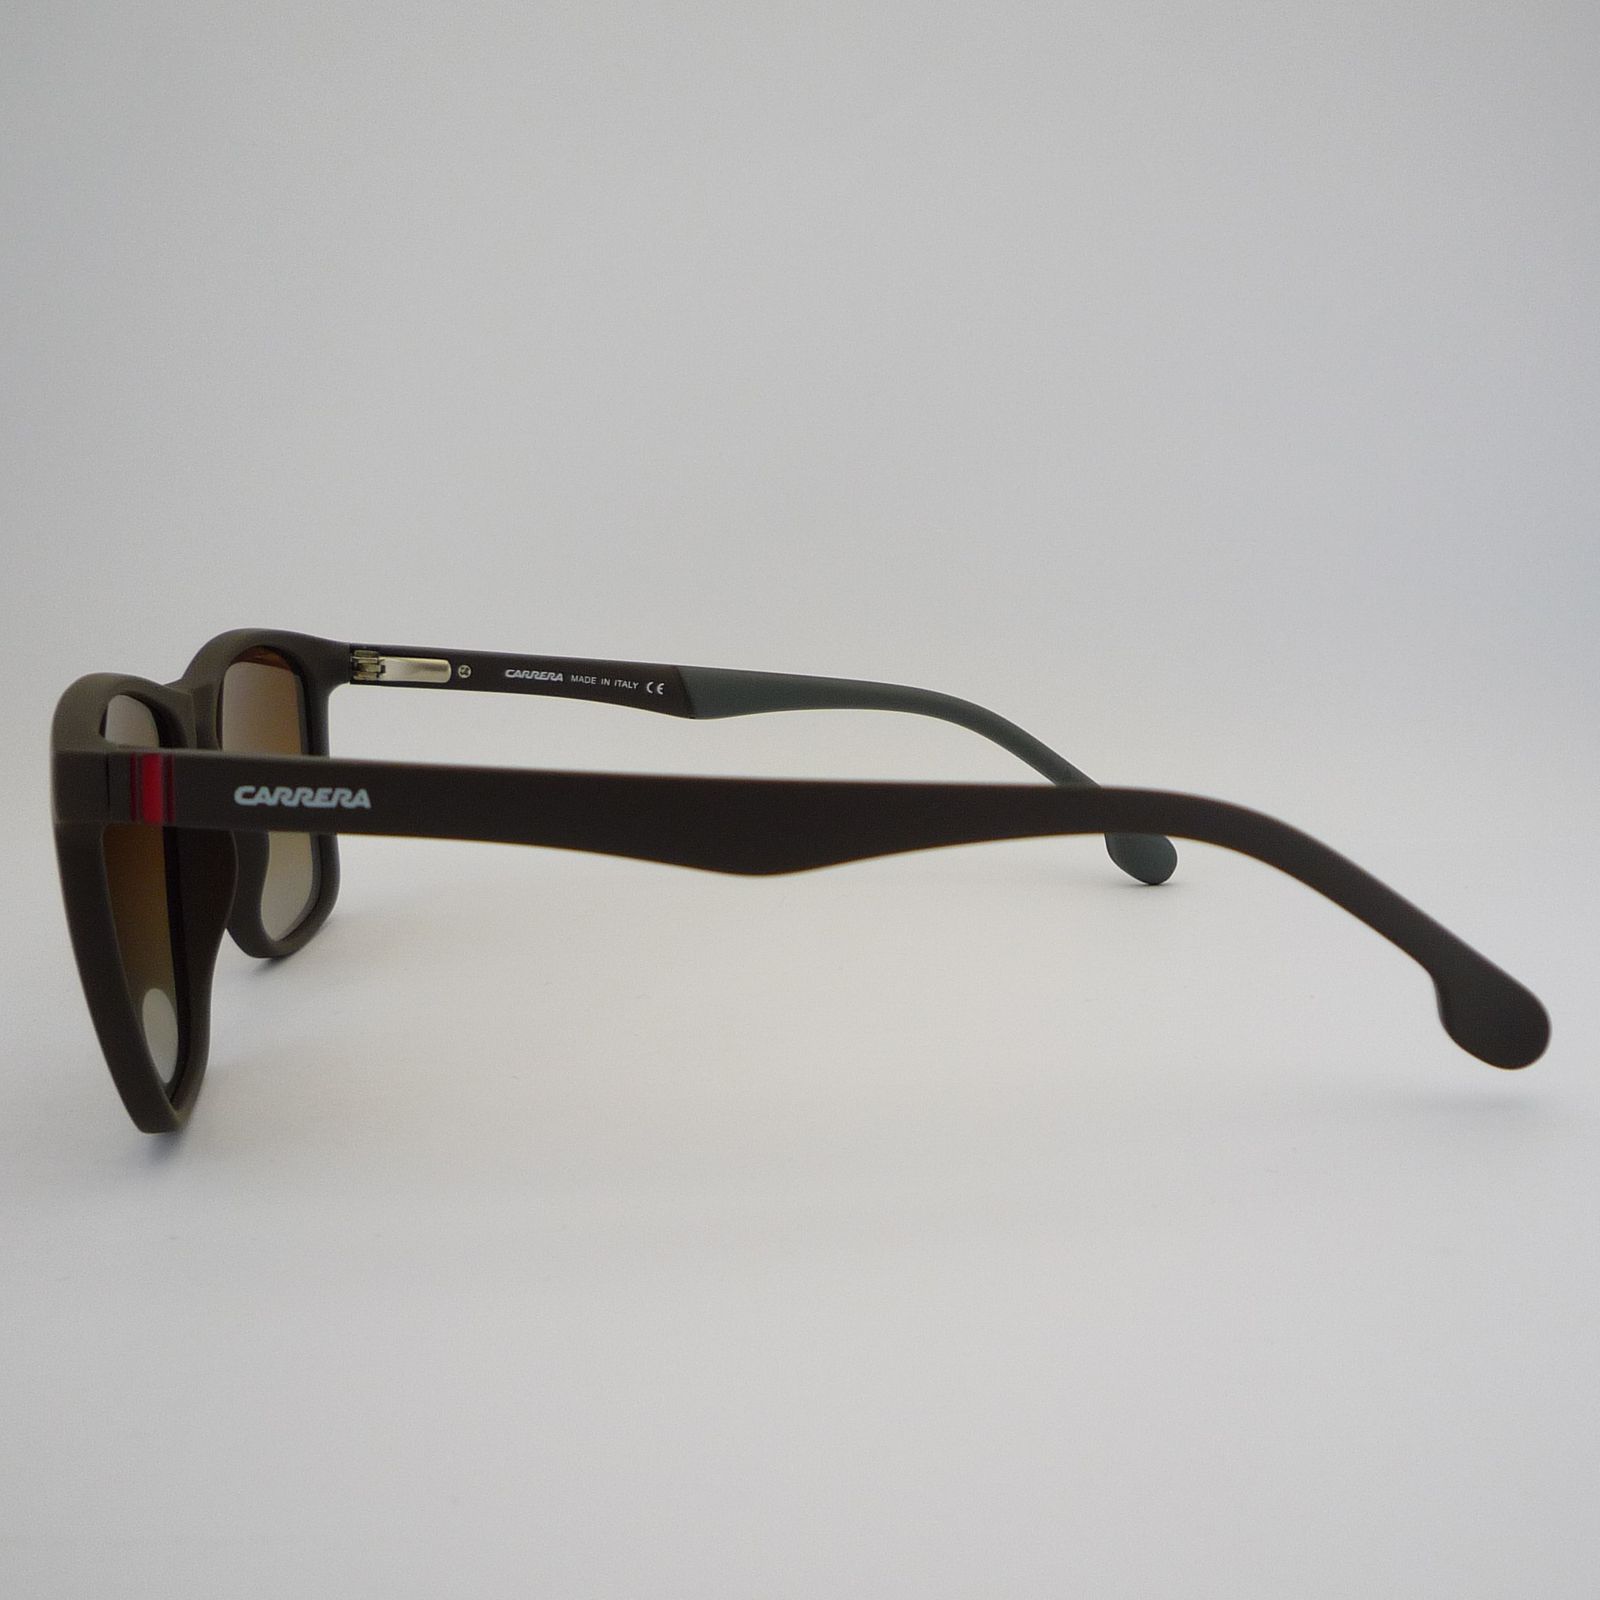 عینک آفتابی کاررا مدل 8207C6 -  - 7